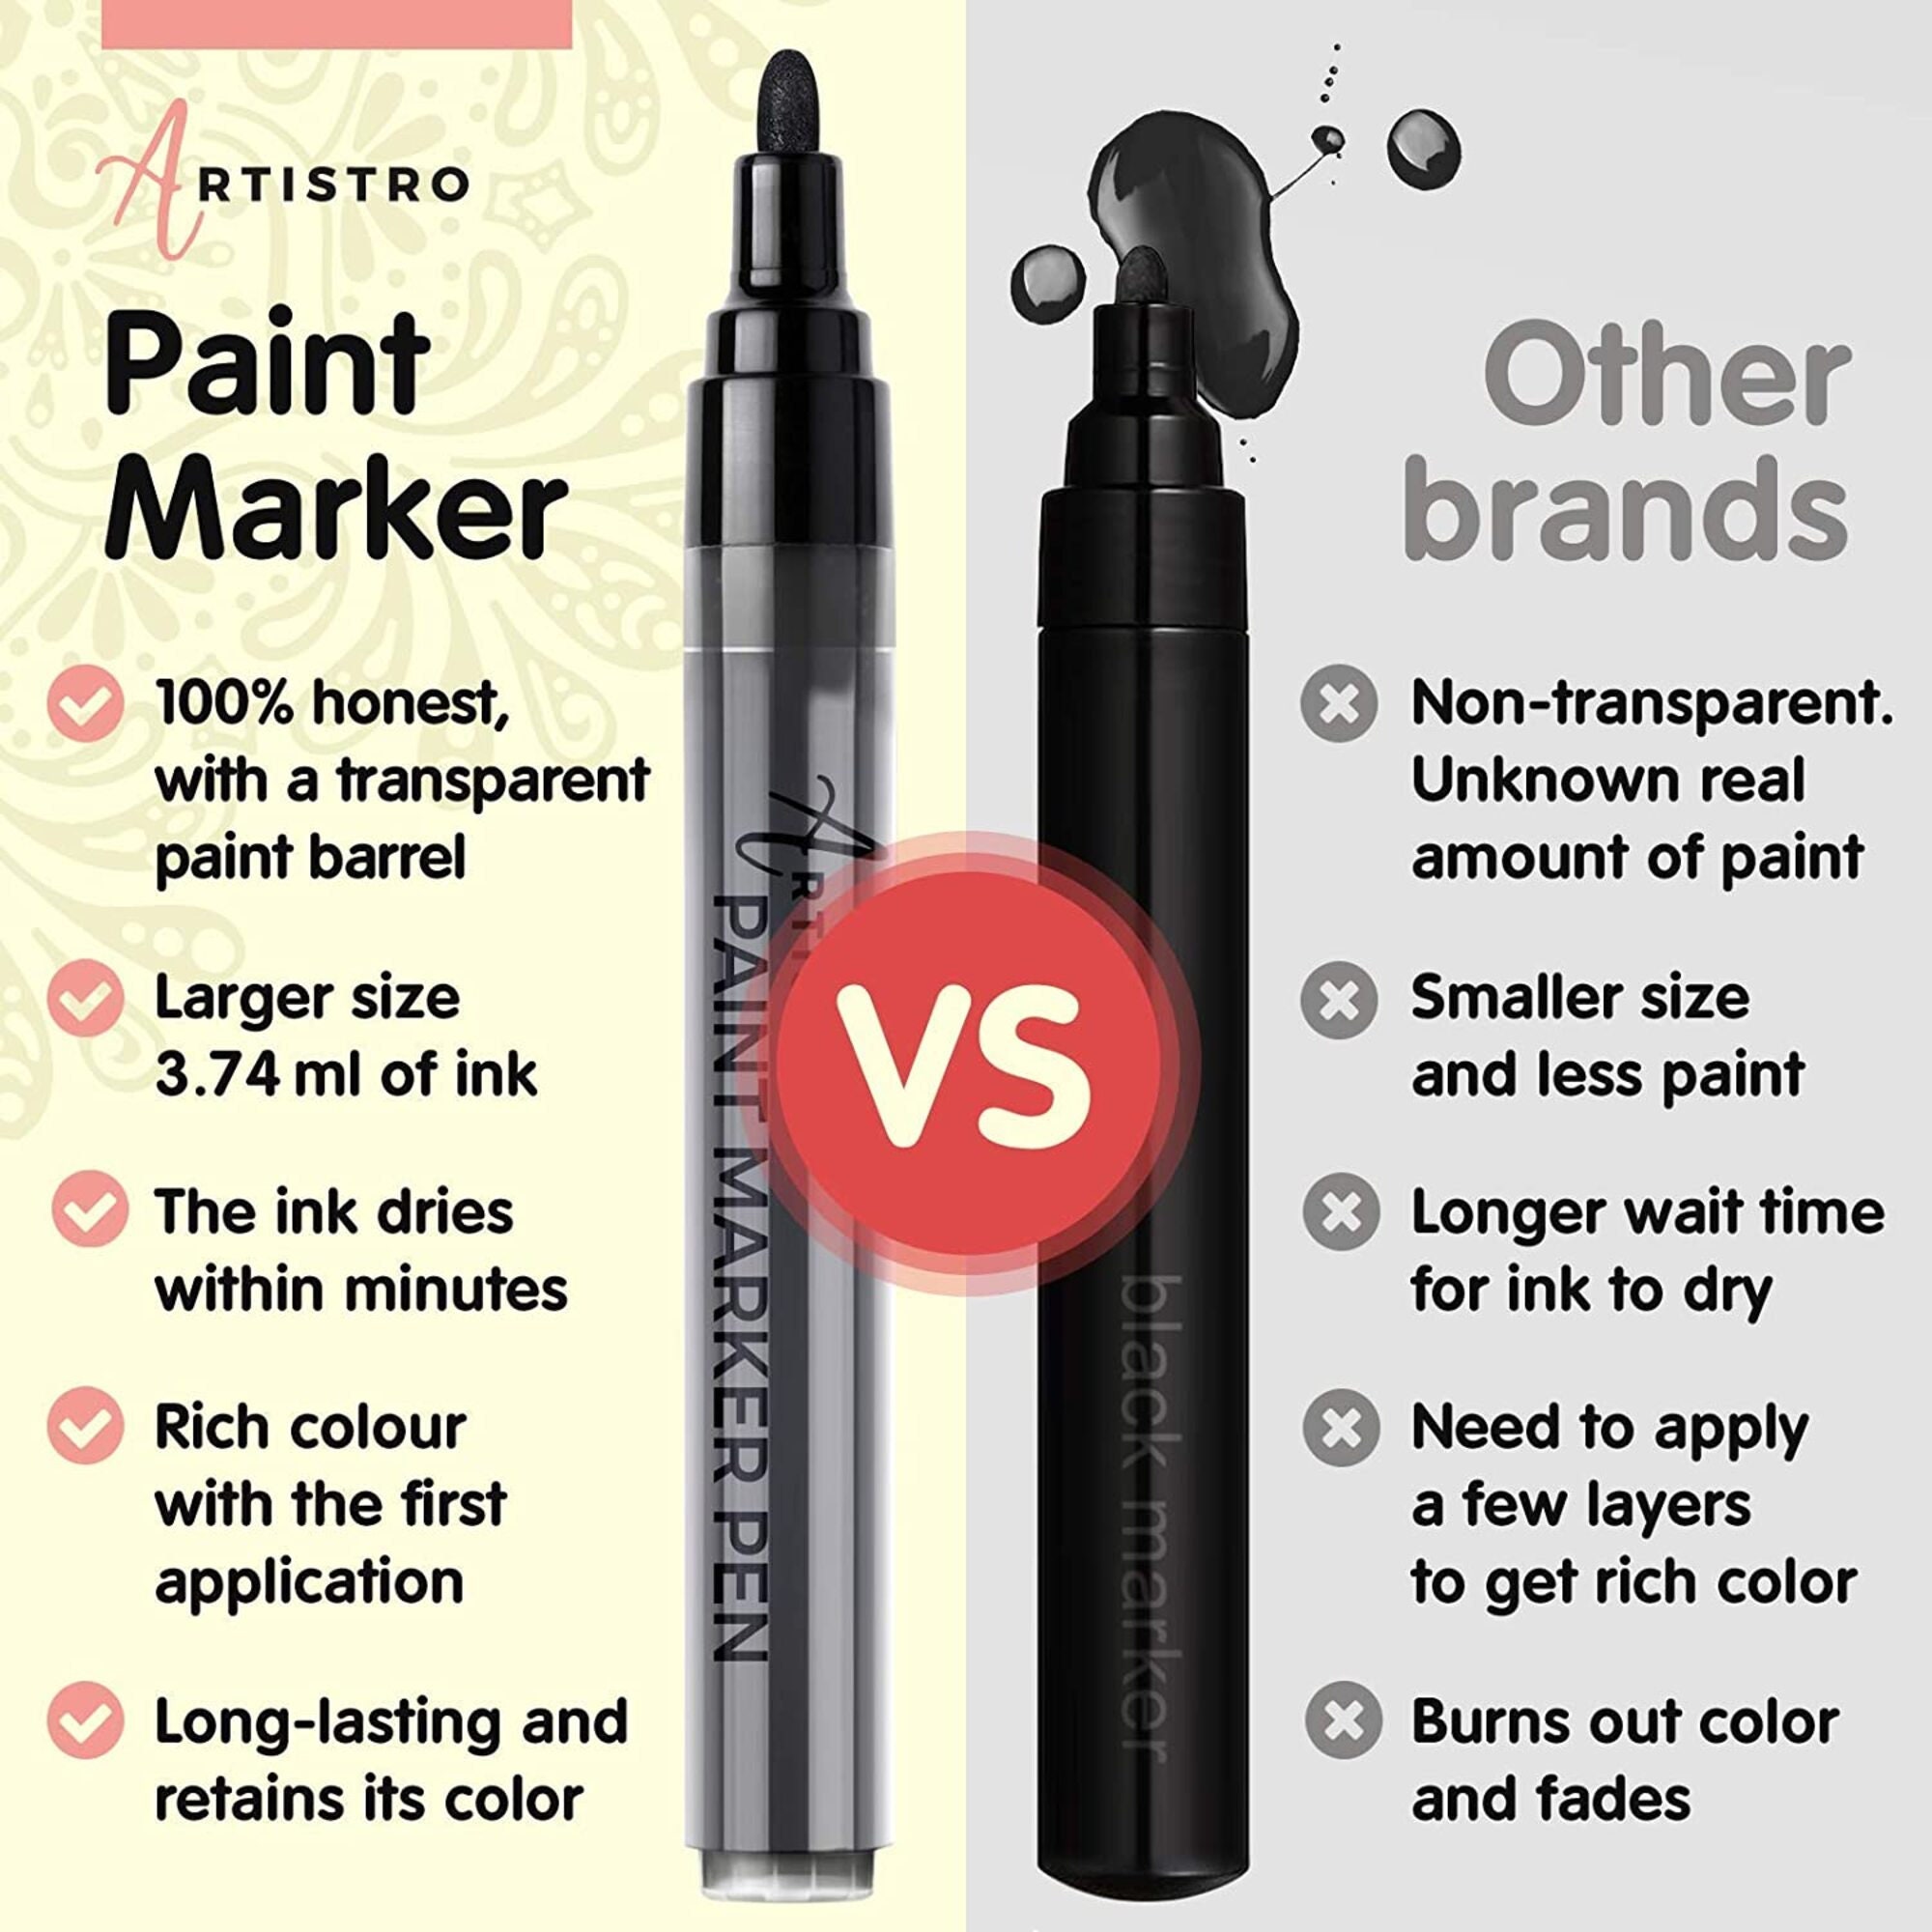 Black Paint Pen Set: 5 Black Acrylic Paint Pens